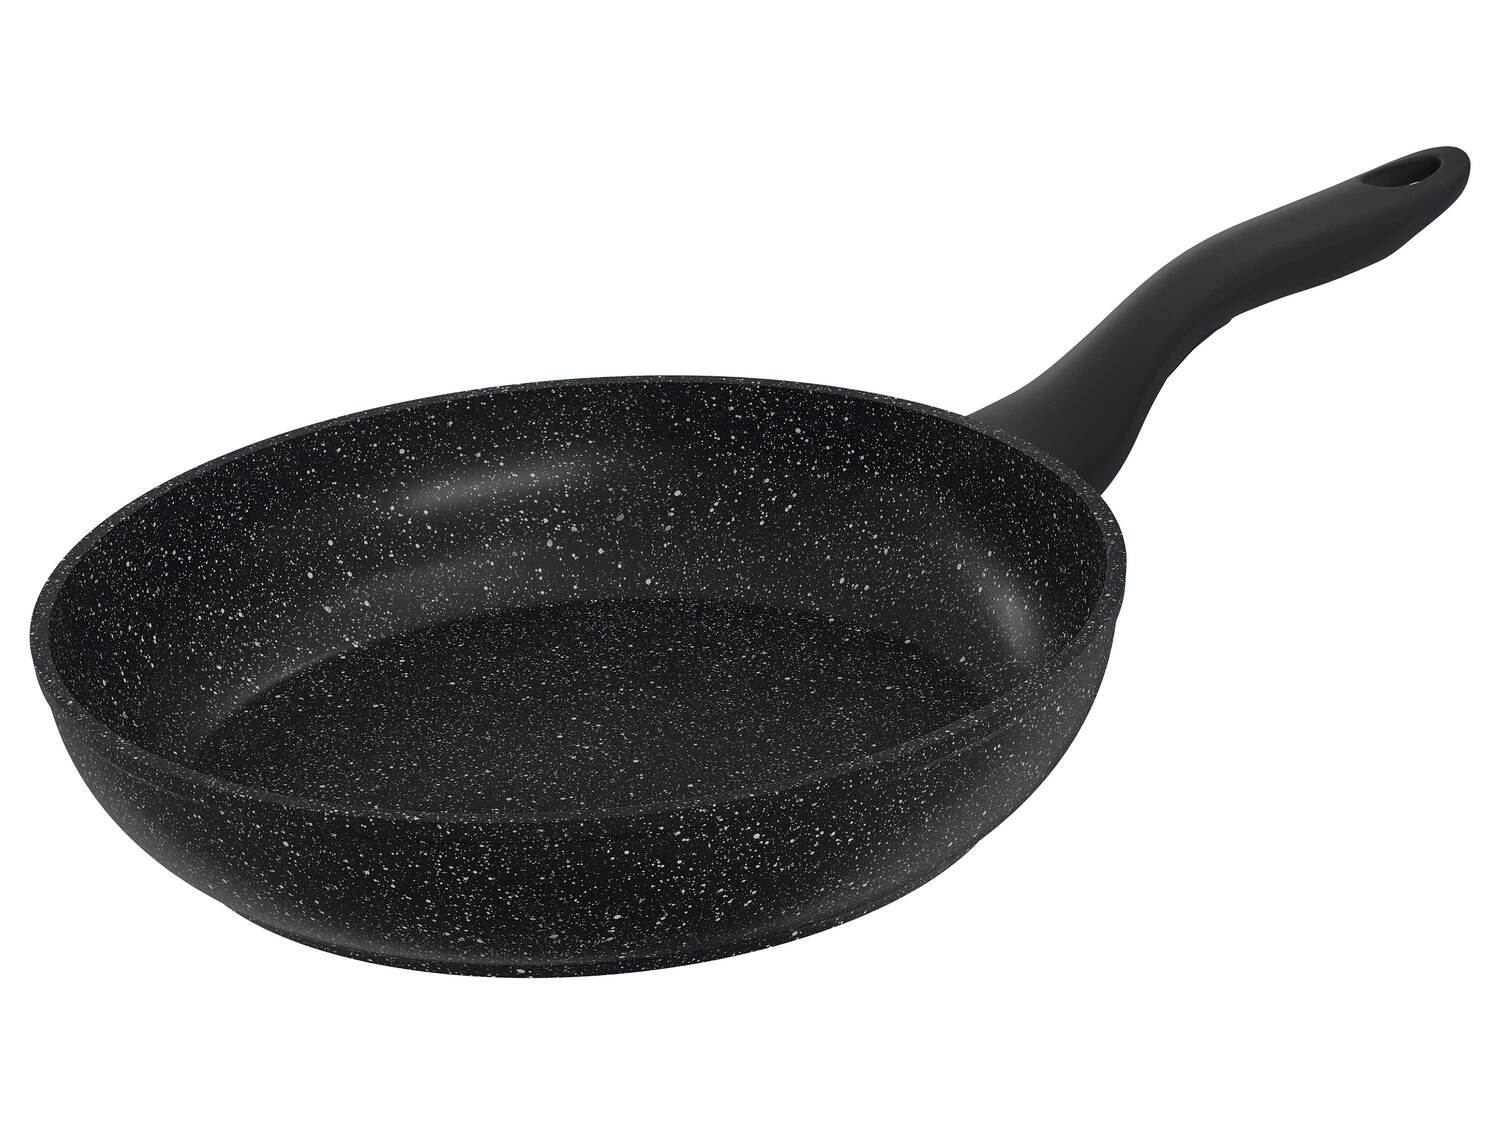 Poêle ou wok en aluminium , le prix 11.99 € 
- Au choix :
- Poêle en aluminium ...